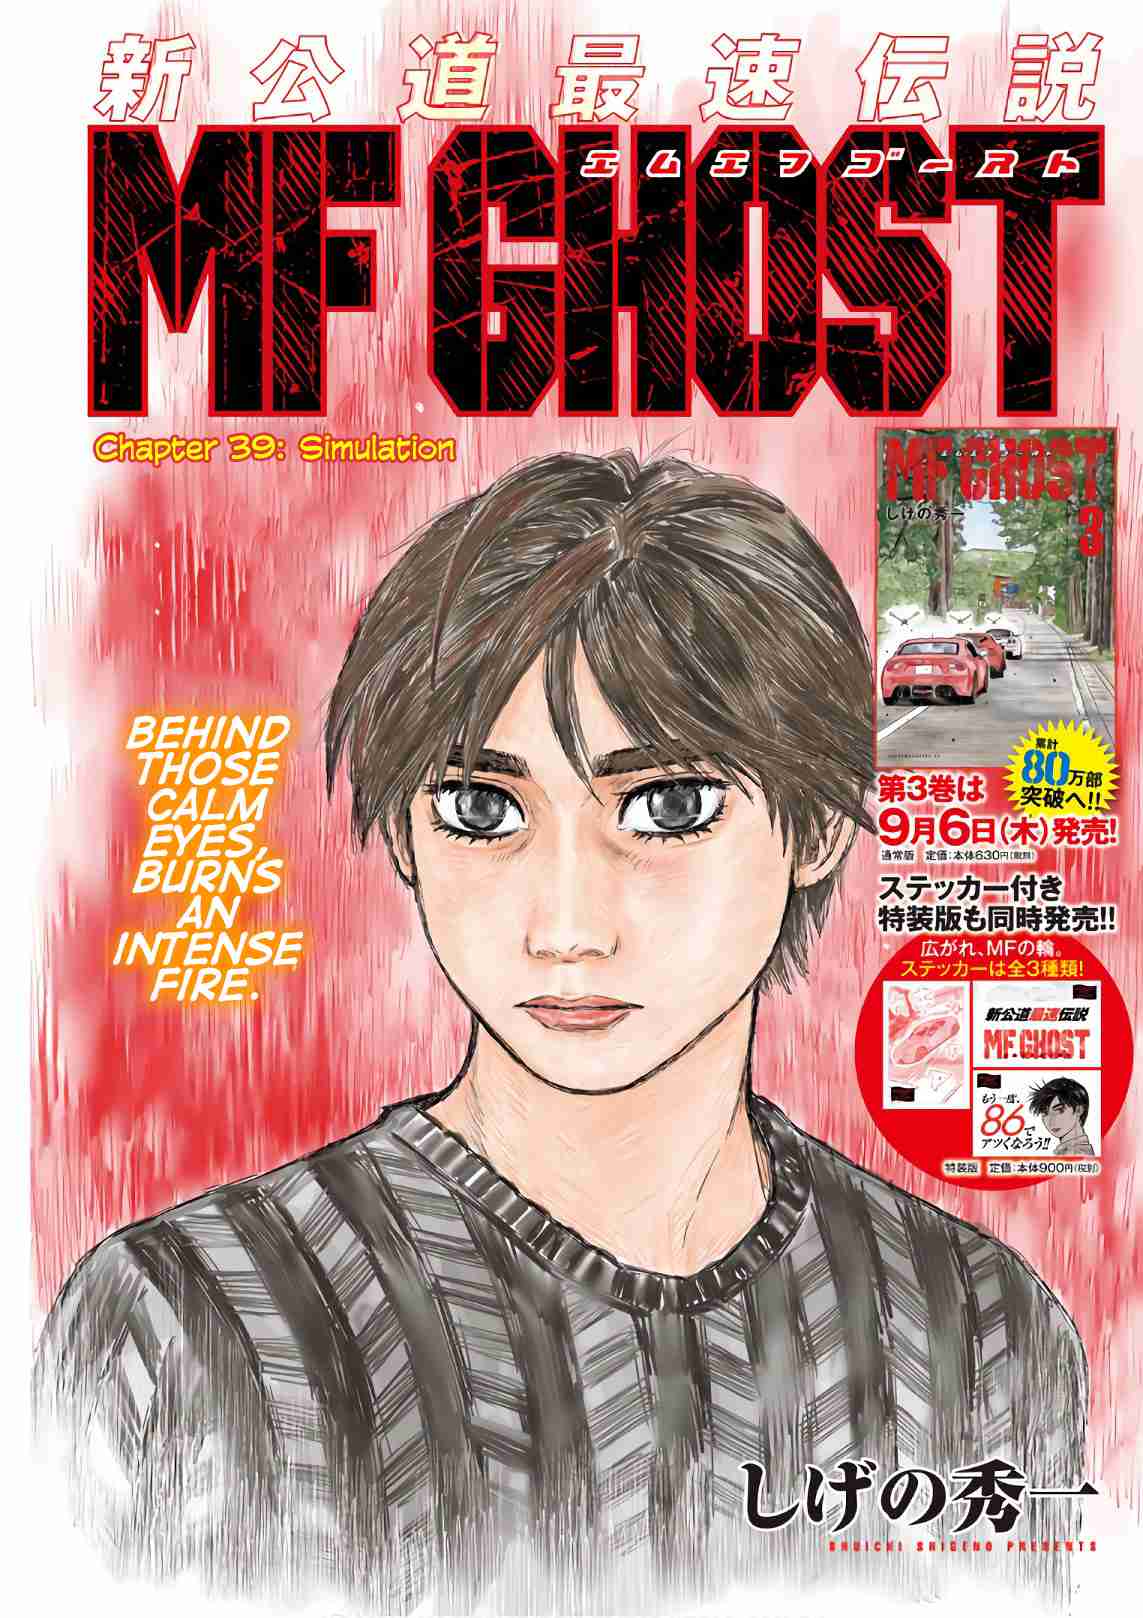 MF Ghost Vol. 4 Ch. 39 Simulation